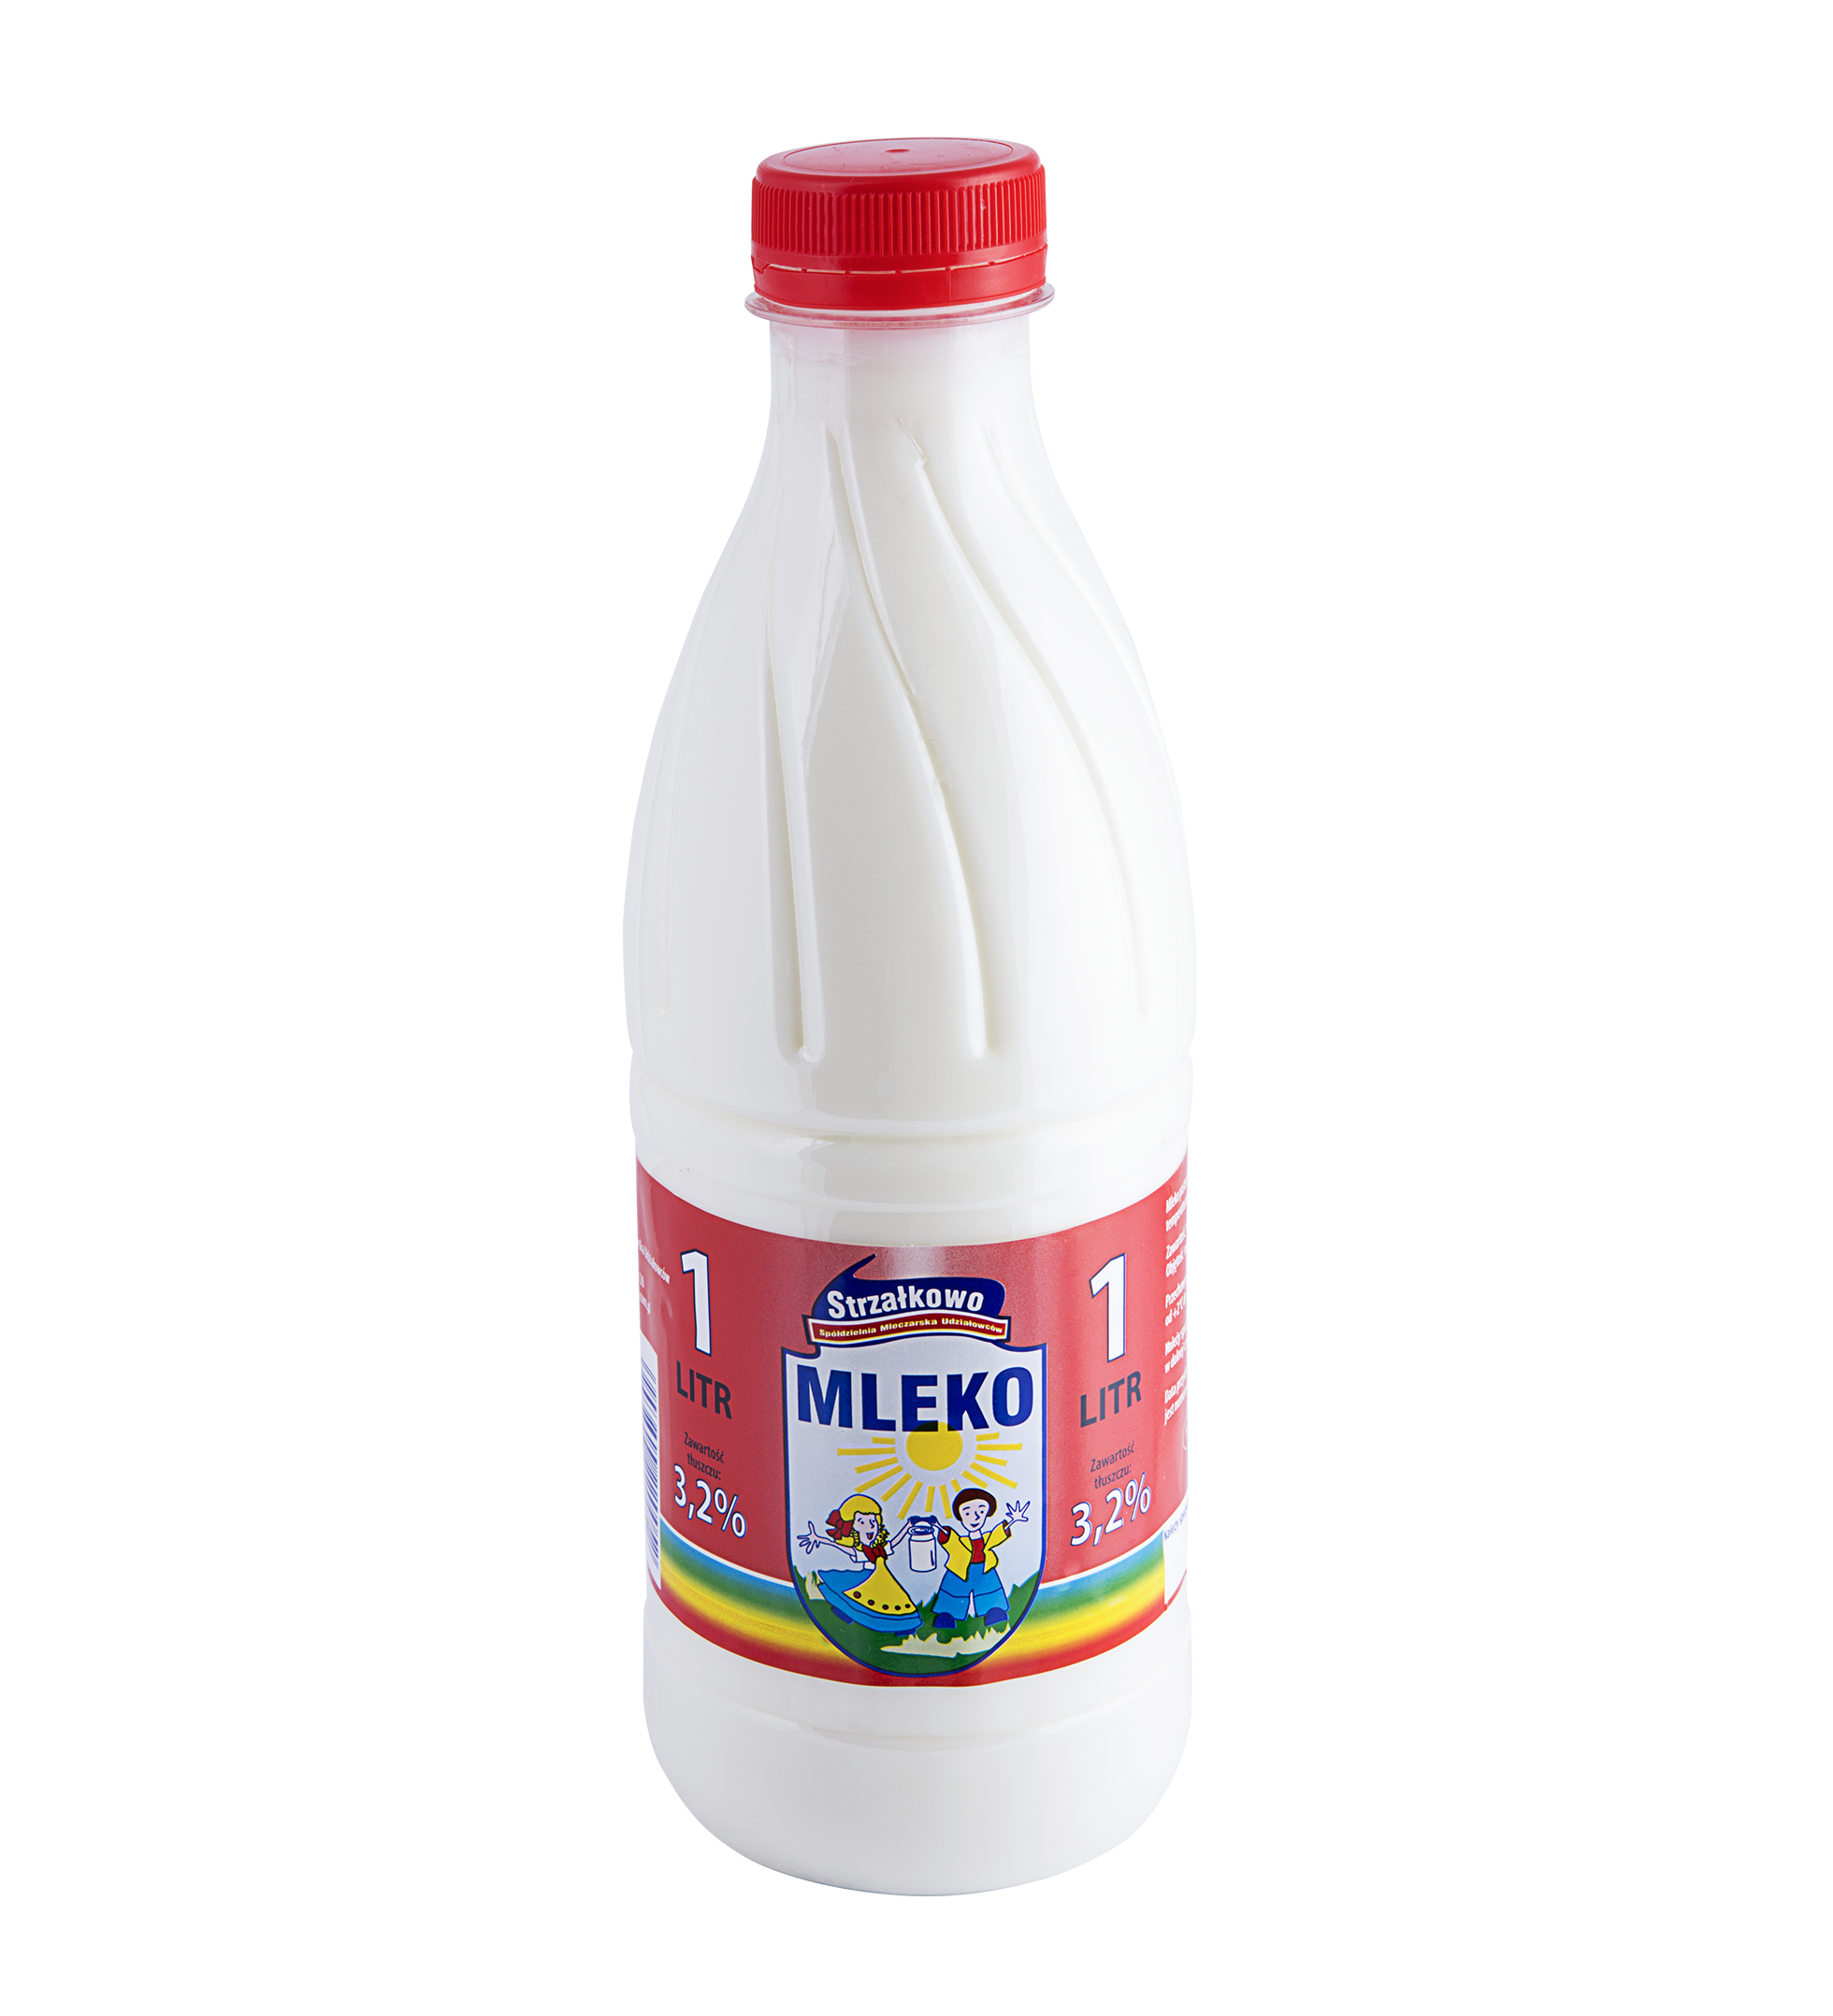 Mleko 3,2% - Mleko, Transparent background PNG HD thumbnail